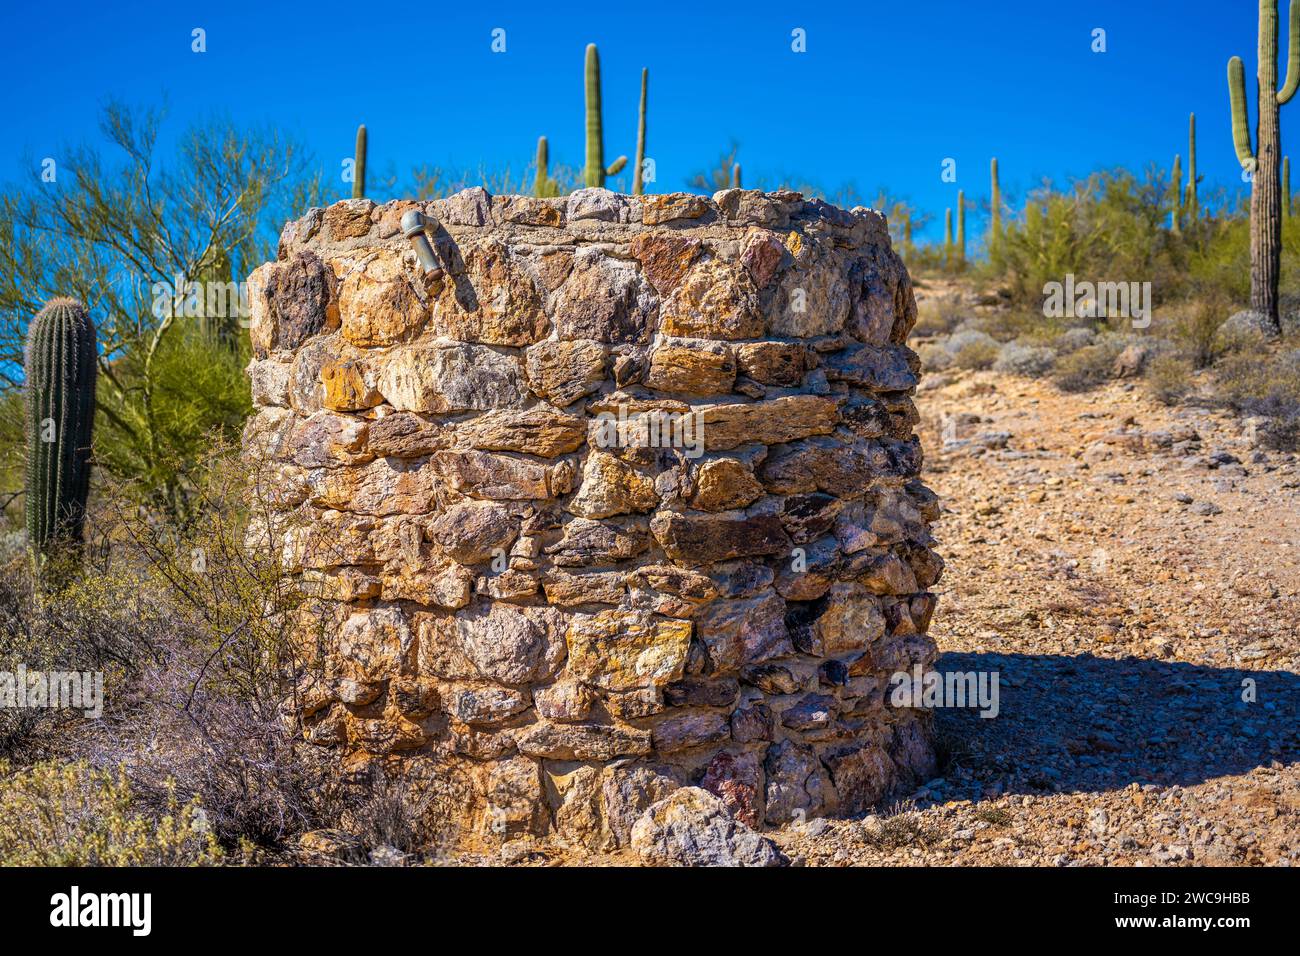 Un long et mince Saguaro Cactus à Tucson, Arizona Banque D'Images